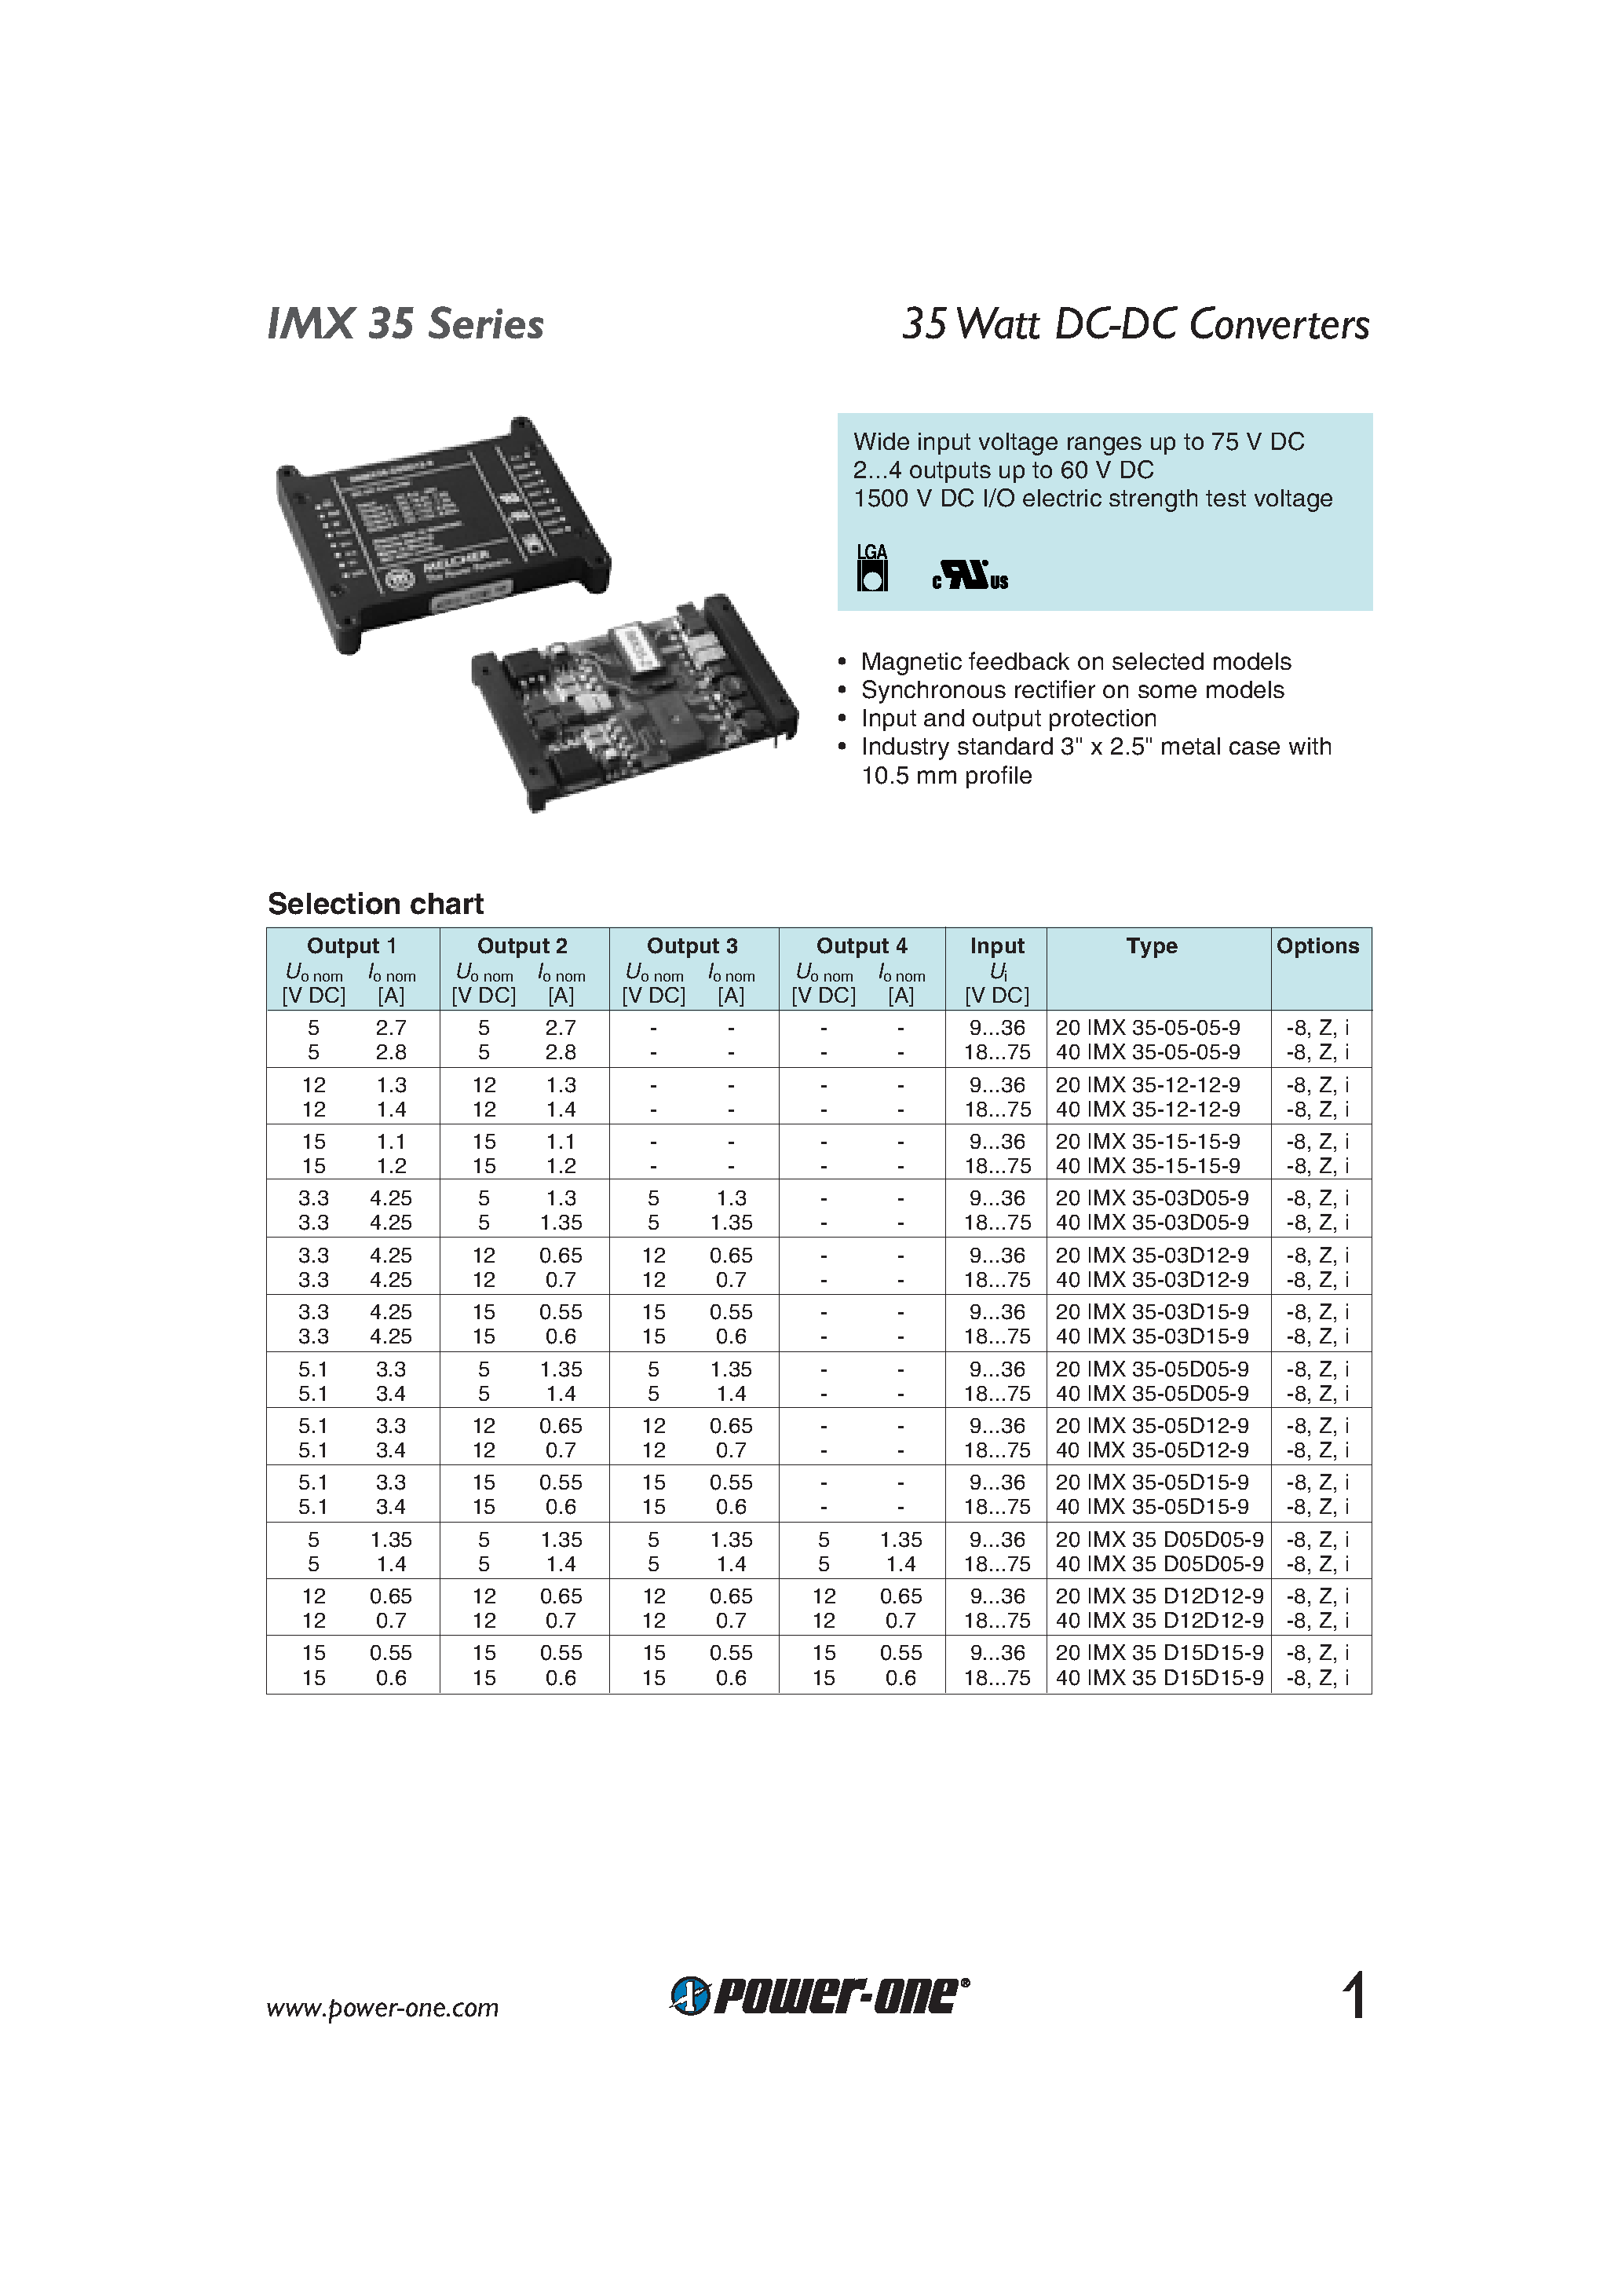 Datasheet 40IMX35-D12D12-9 - 35 Watt DC-DC Converters page 1